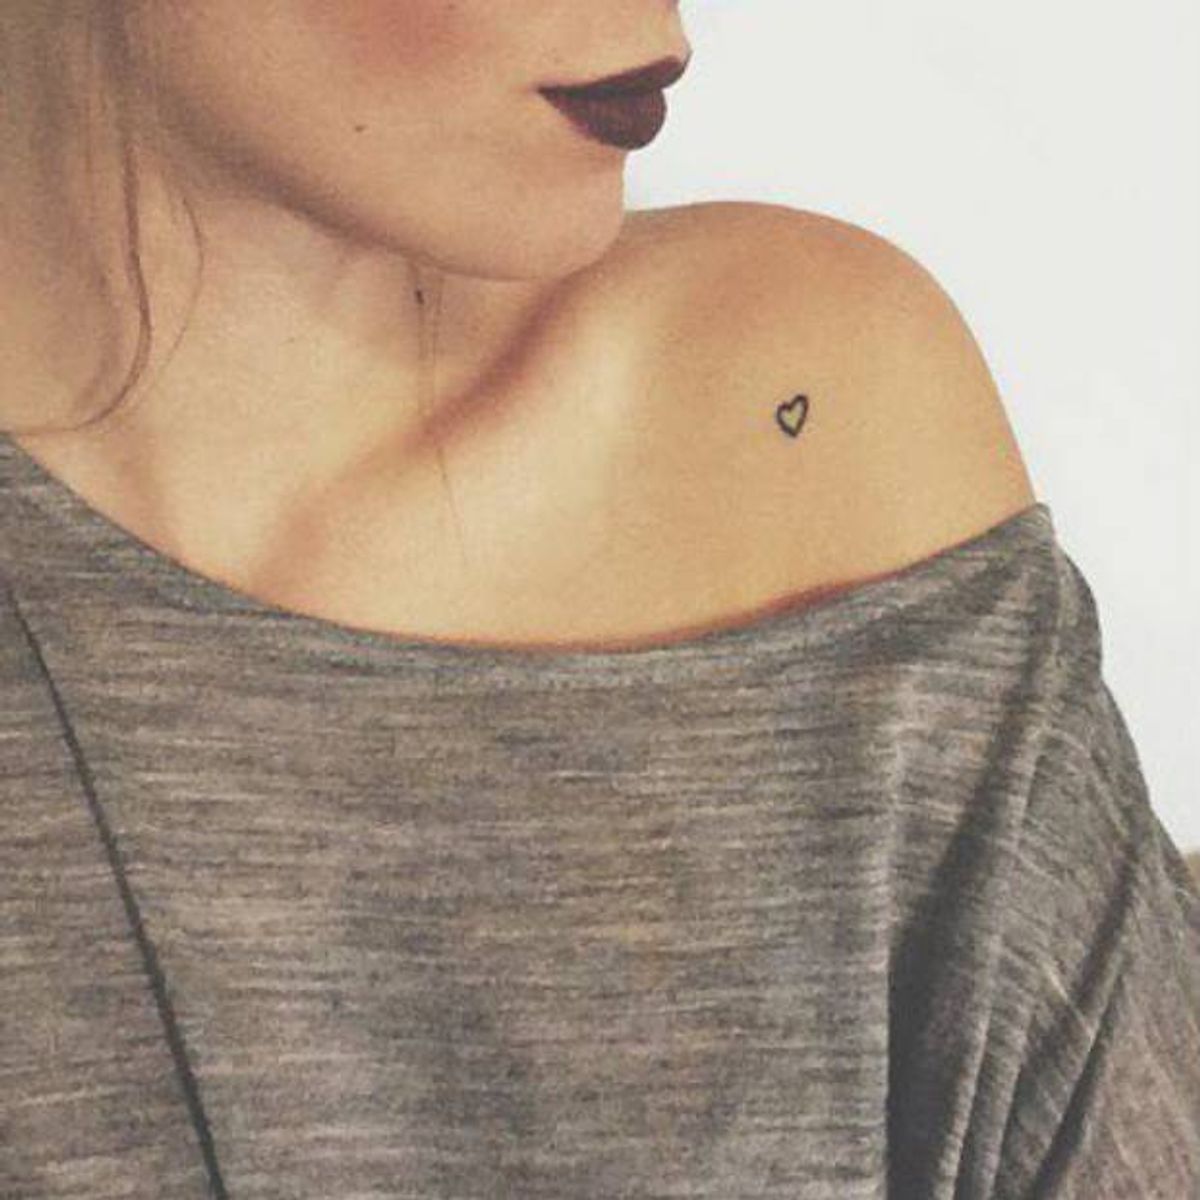 10 Tiny Tattoos For The Hopeless Romantic